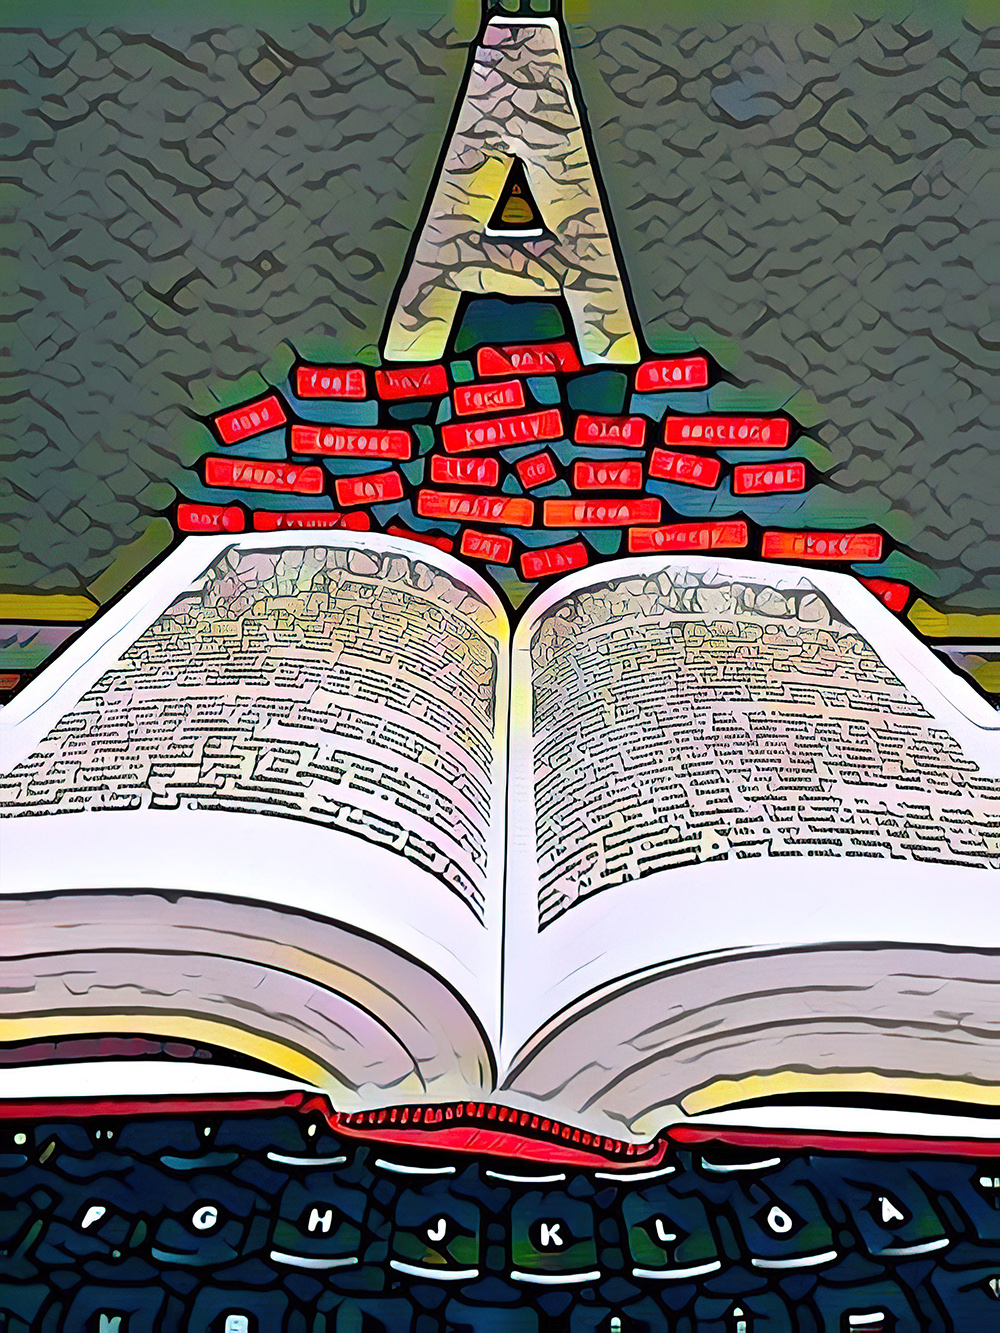 Hintergrundbild: Auf einer schwarzen Tastatur am unteren Bildrand liegt ein aufgeschlagenes Buch, darüber schweben rote Wörter in Form von Etiketten, über denen der Buchstabe A schwebt